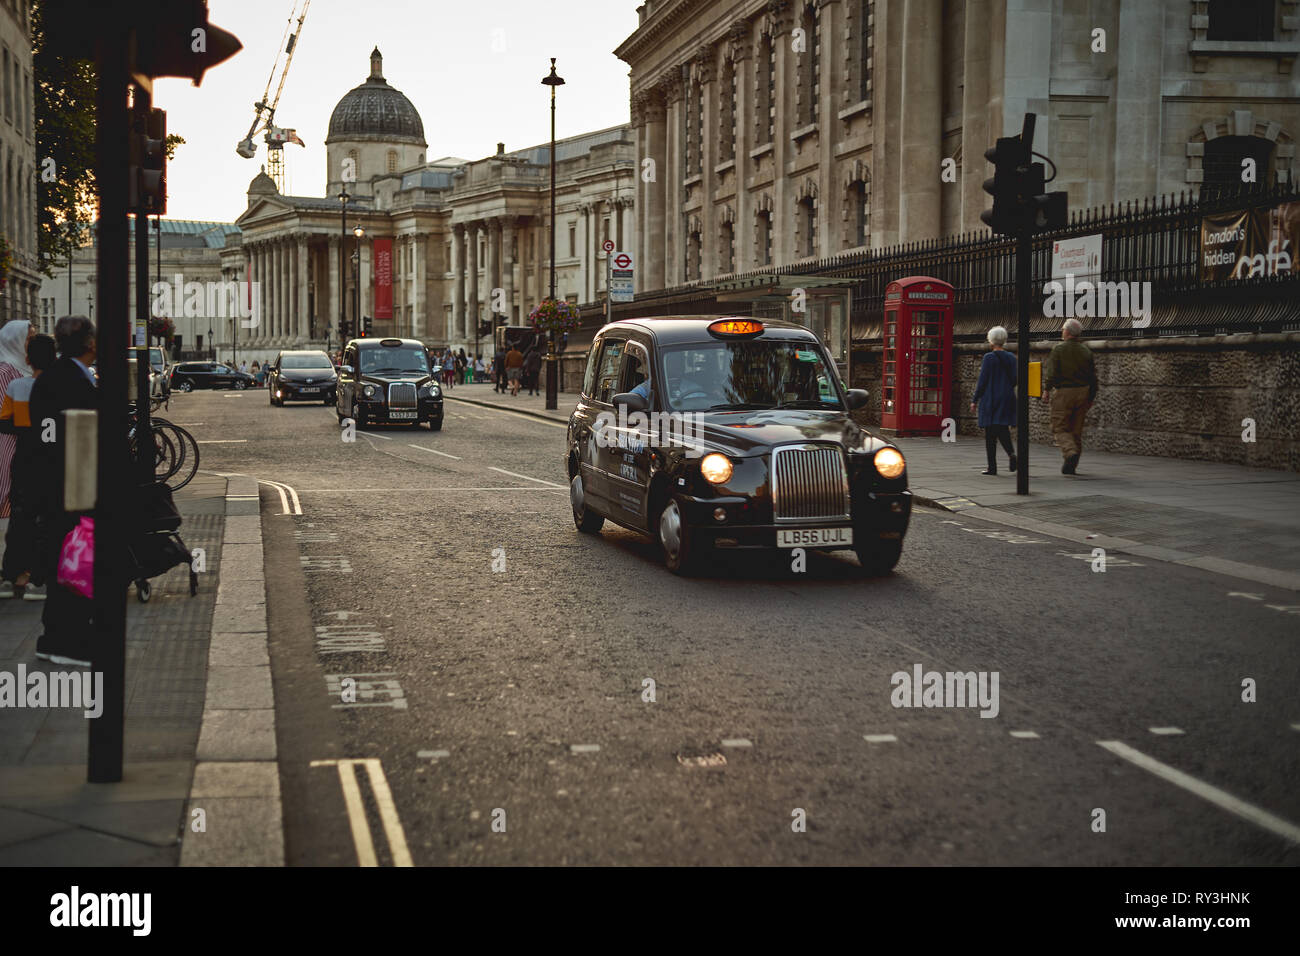 London, UK - September, 2018.  Iconic black cabs near Trafalgar Square in central London. Stock Photo